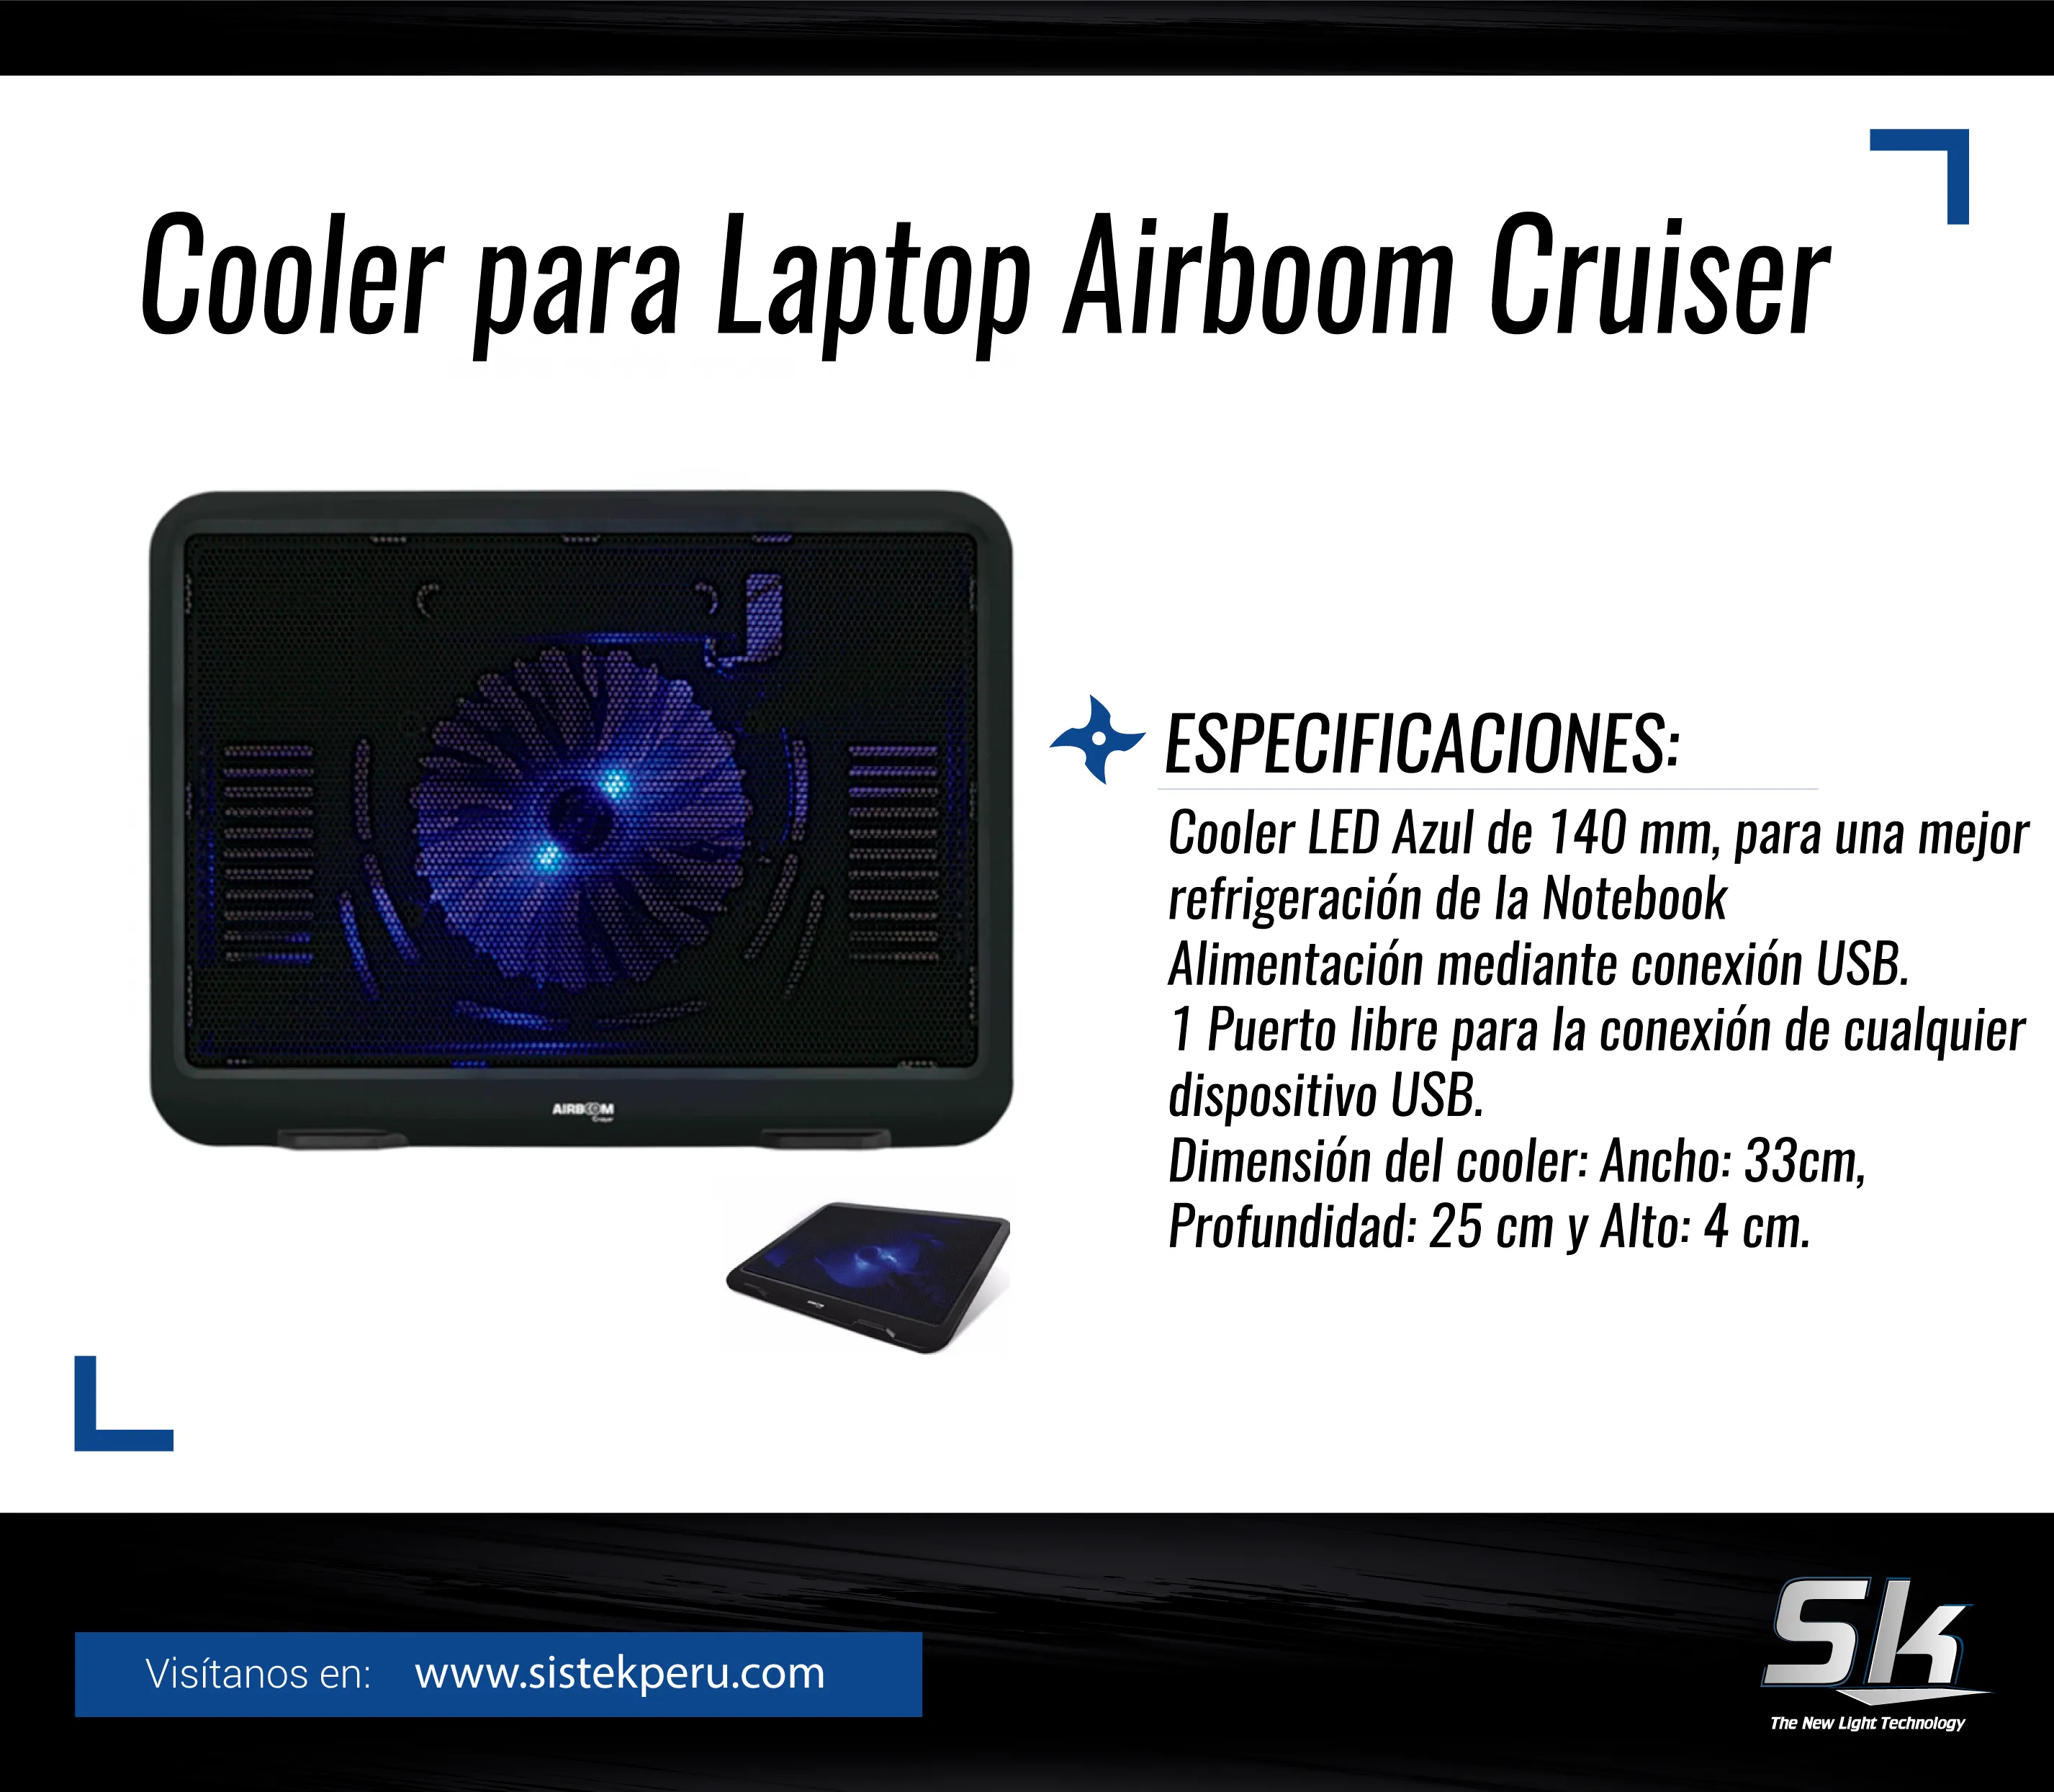 Cooler para Laptop Airboom Cruiser